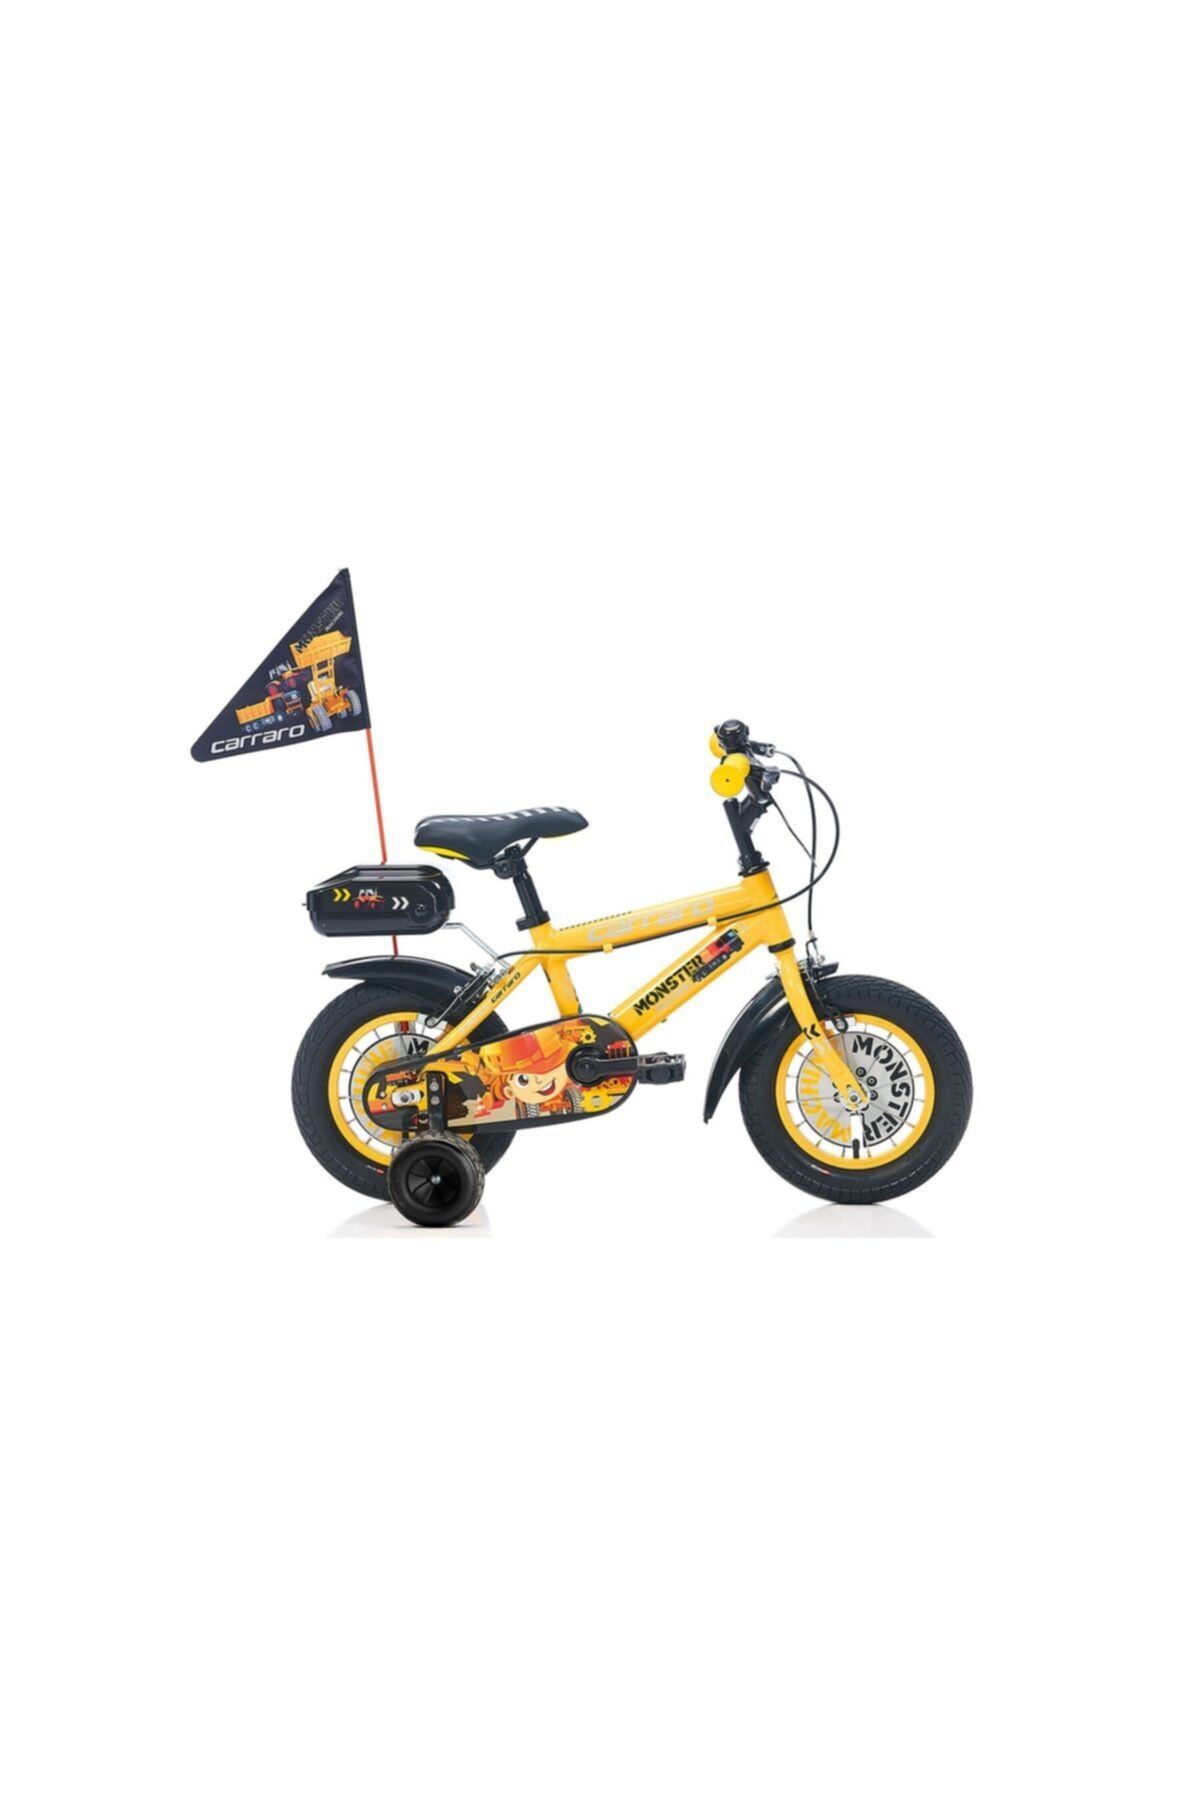 Carraro Monster 12 Çocuk Bisikleti Sarı - Siyah 21 Cm